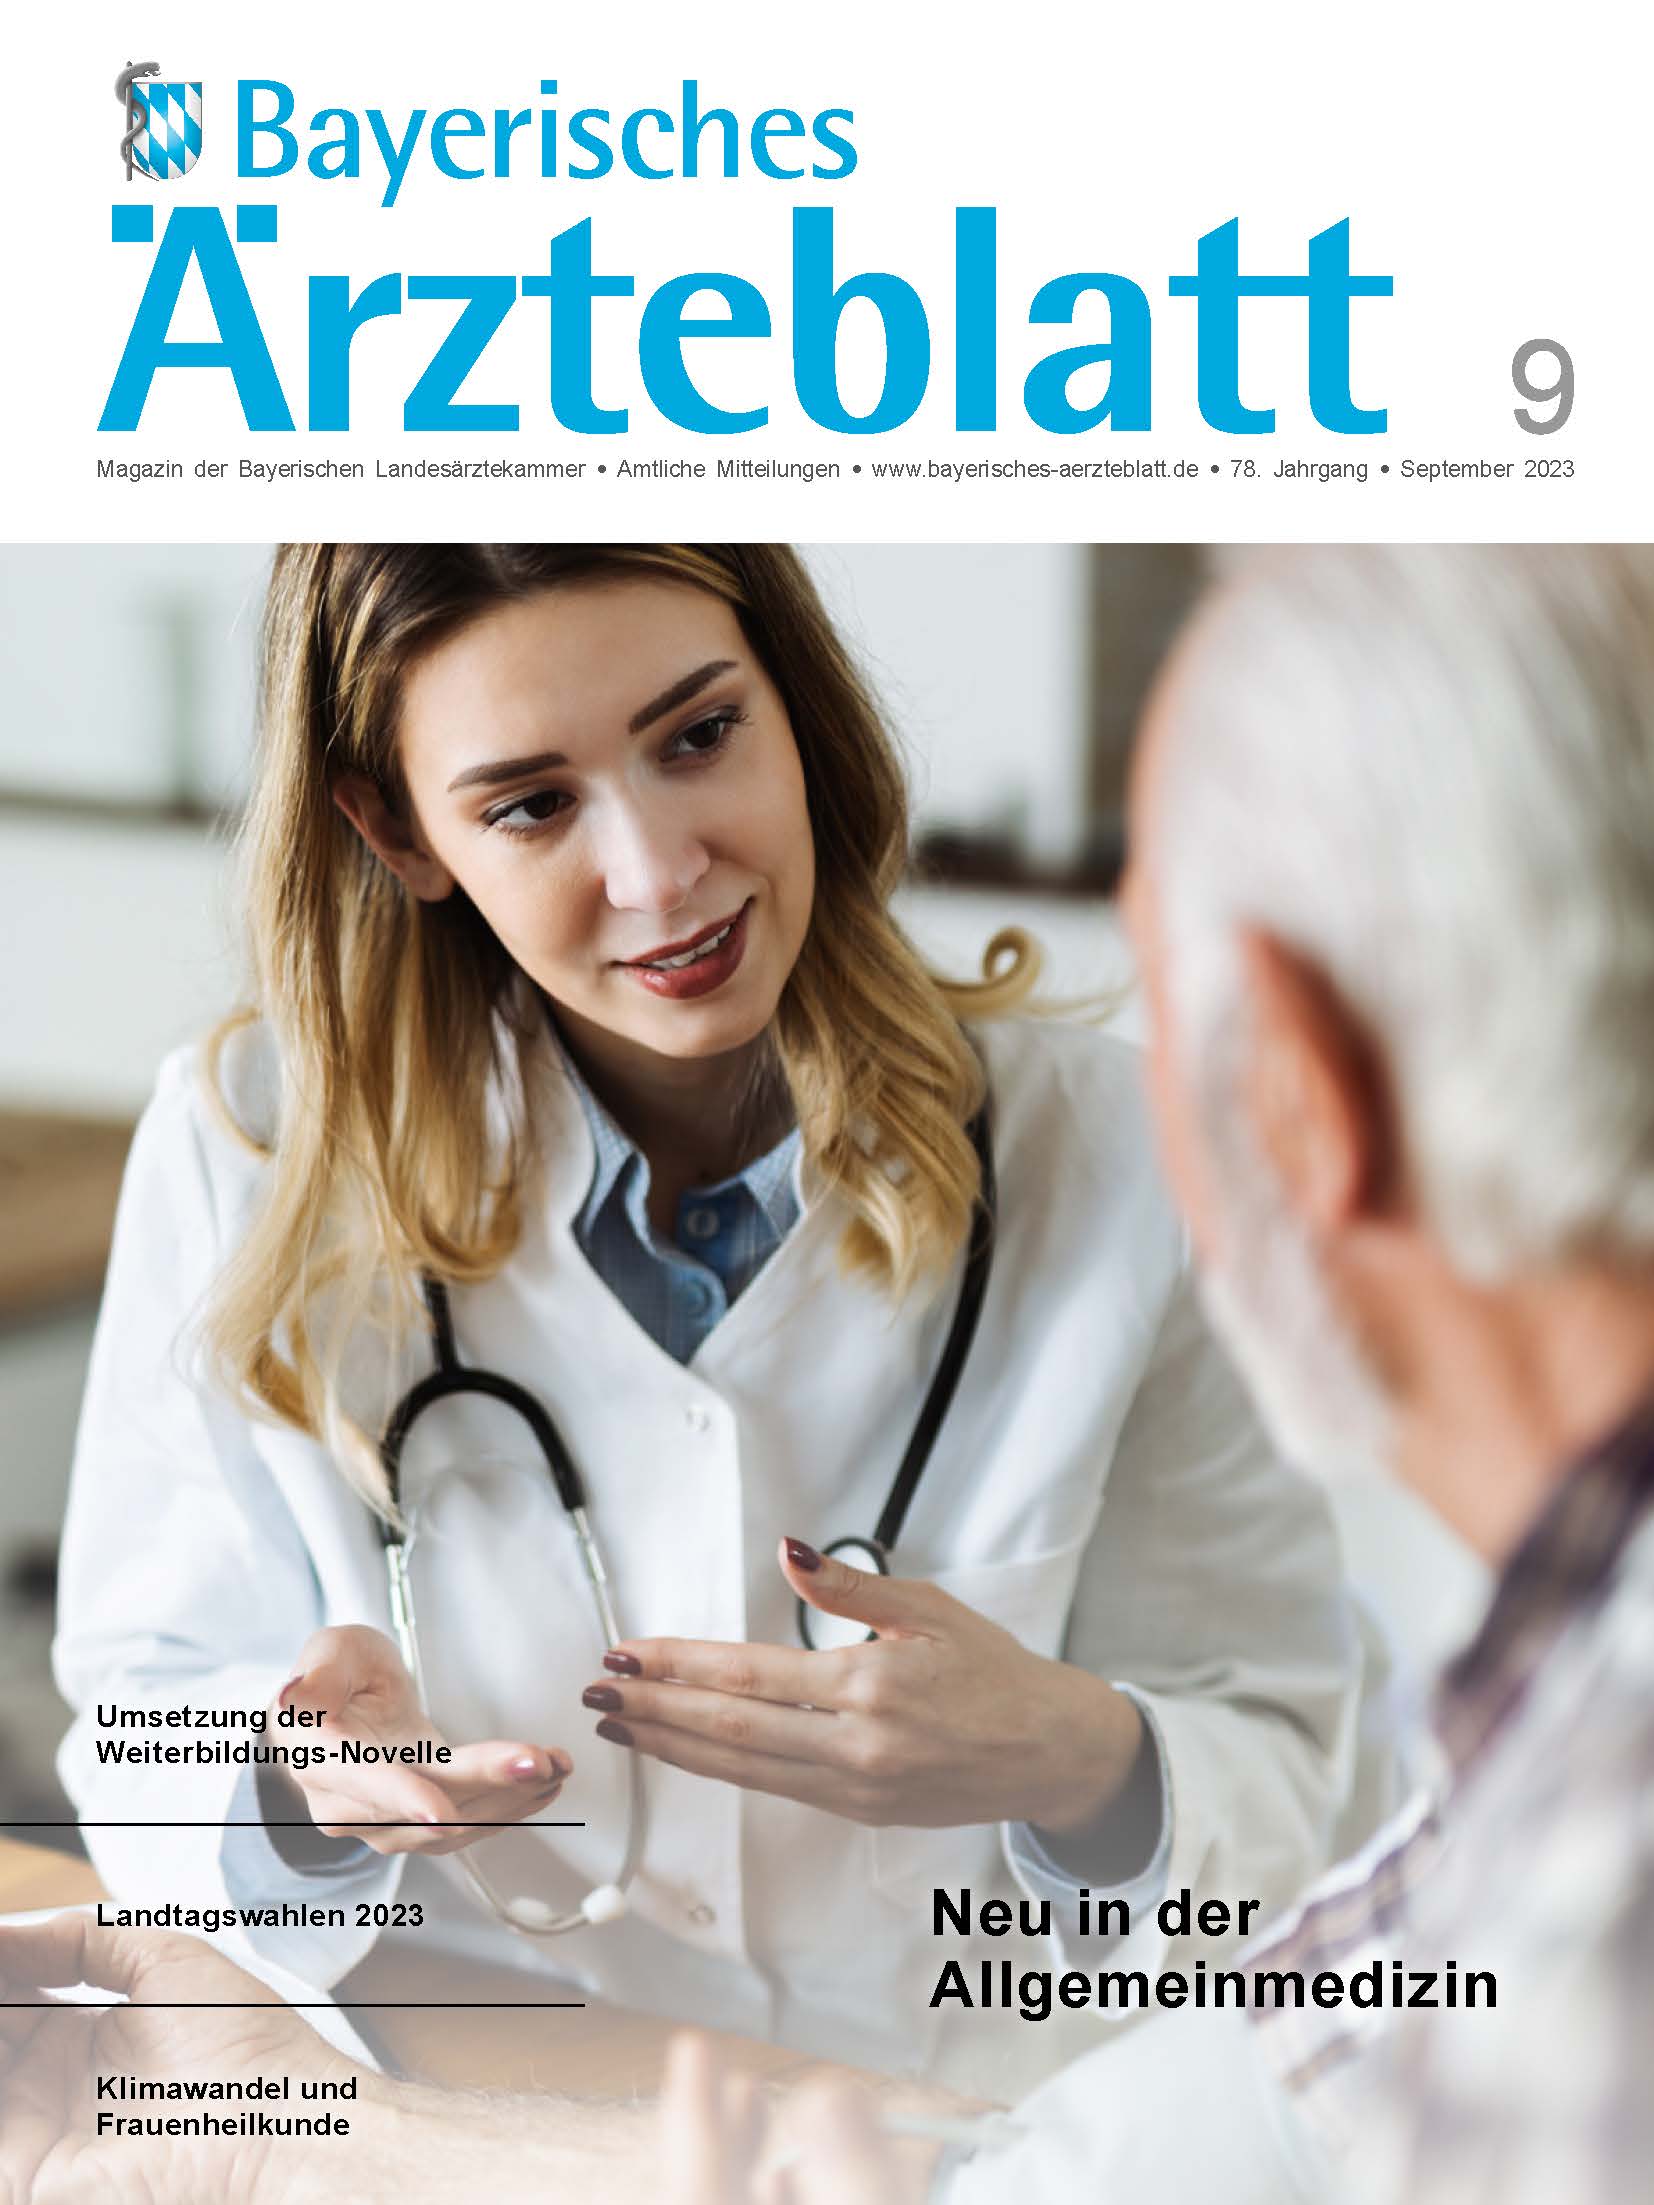 Bayerisches Ärzteblatt Nr. 9/2014